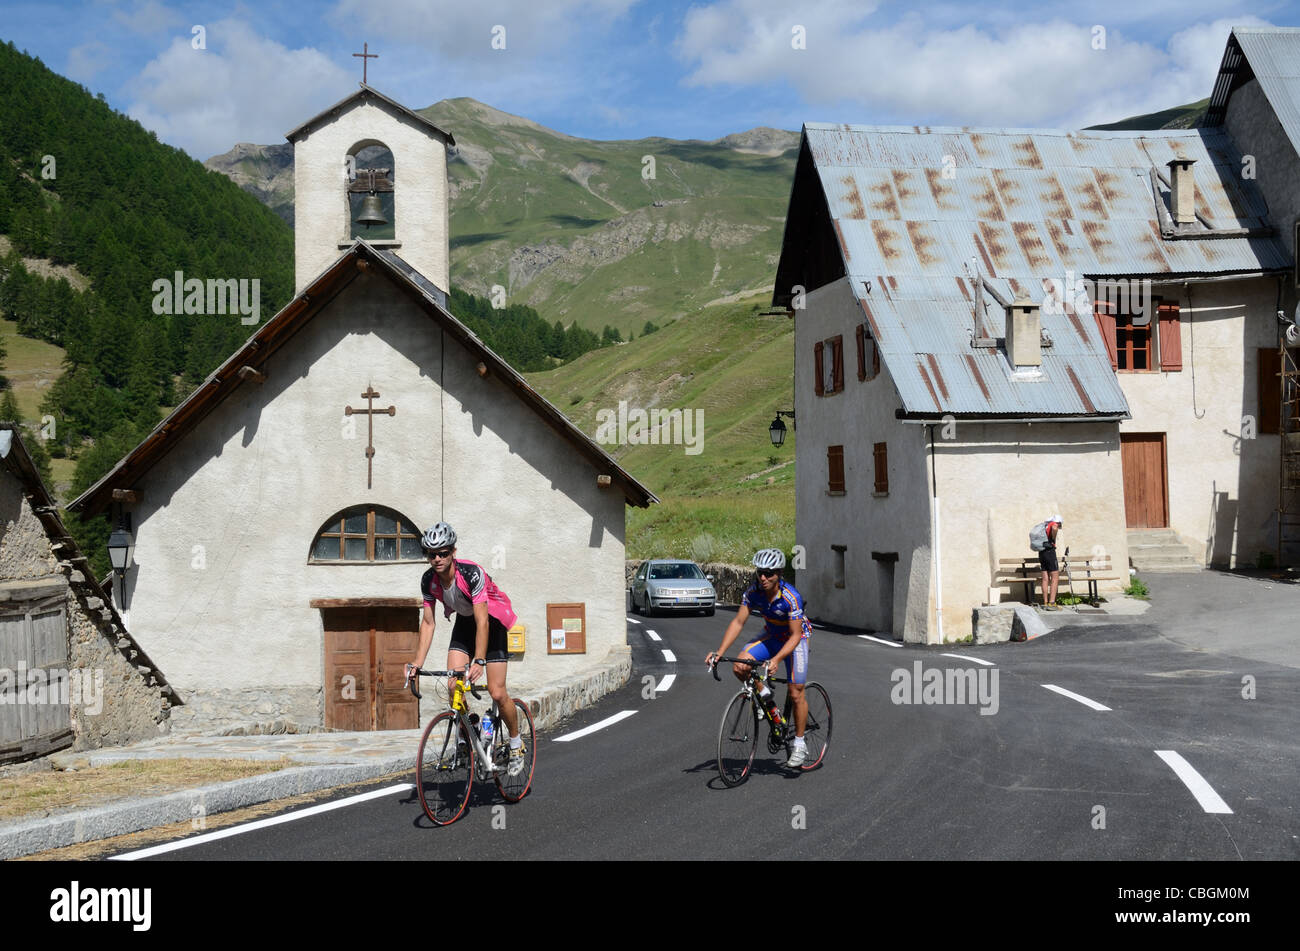 Cyclistes pédalez à Bousieyas Hamlet, Saint Dalmas-le-Selvage, Vallée de la Tinée, sur la route de la Bonette, Alpes-Maritimes France Banque D'Images